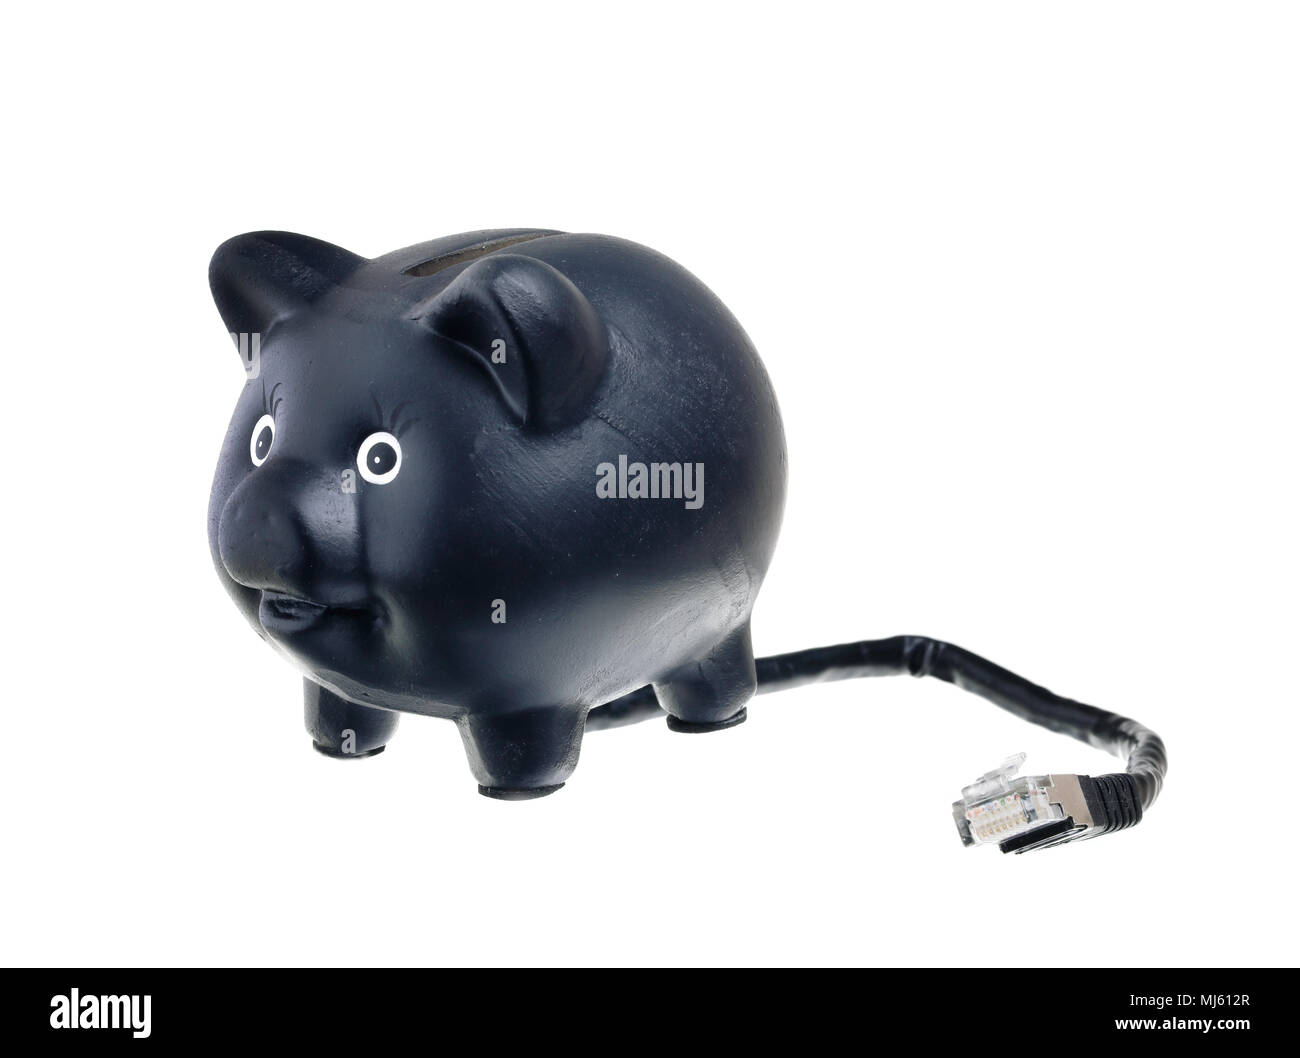 Ein Internet Bank in Form von einem Sparschwein mit einem Netzwerkkabel auf weißem Hintergrund, zeigt das moderne Bankgeschäft mit Selbstbedienung. Stockfoto